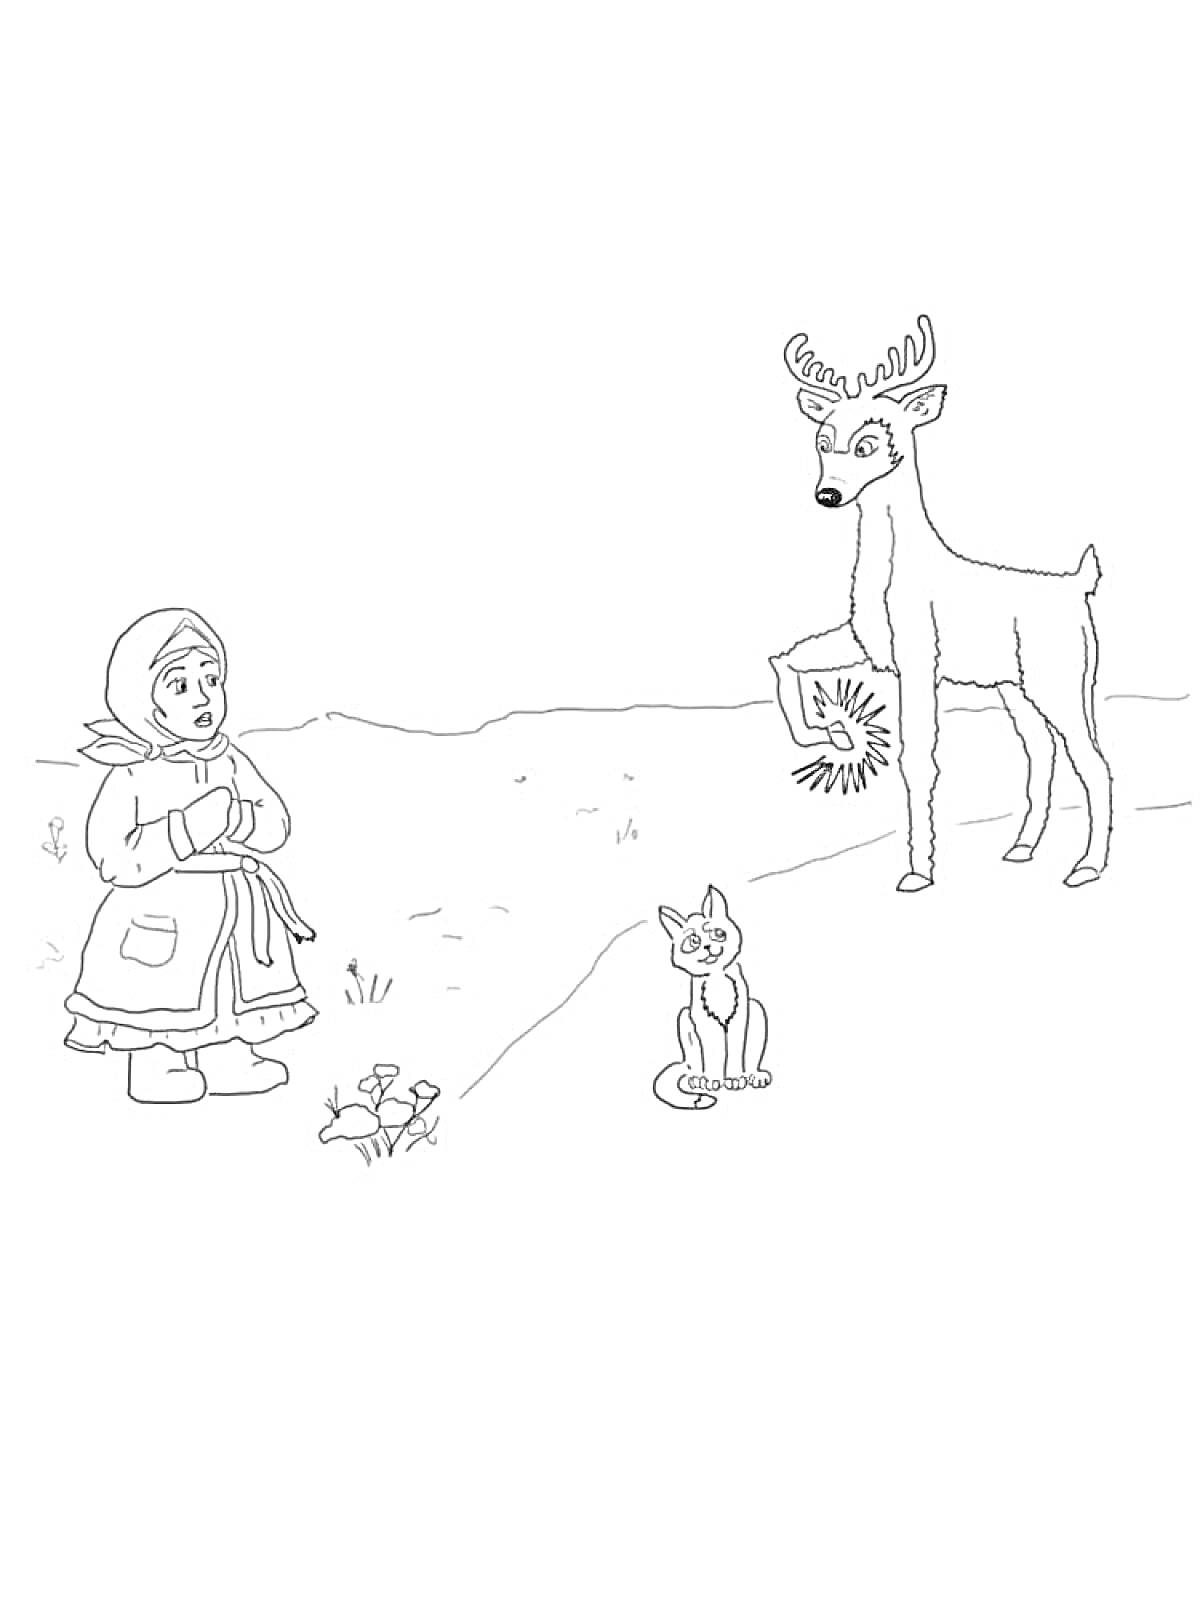 Раскраска Девочка в платке, олень с серебряным копытцем, и кошка